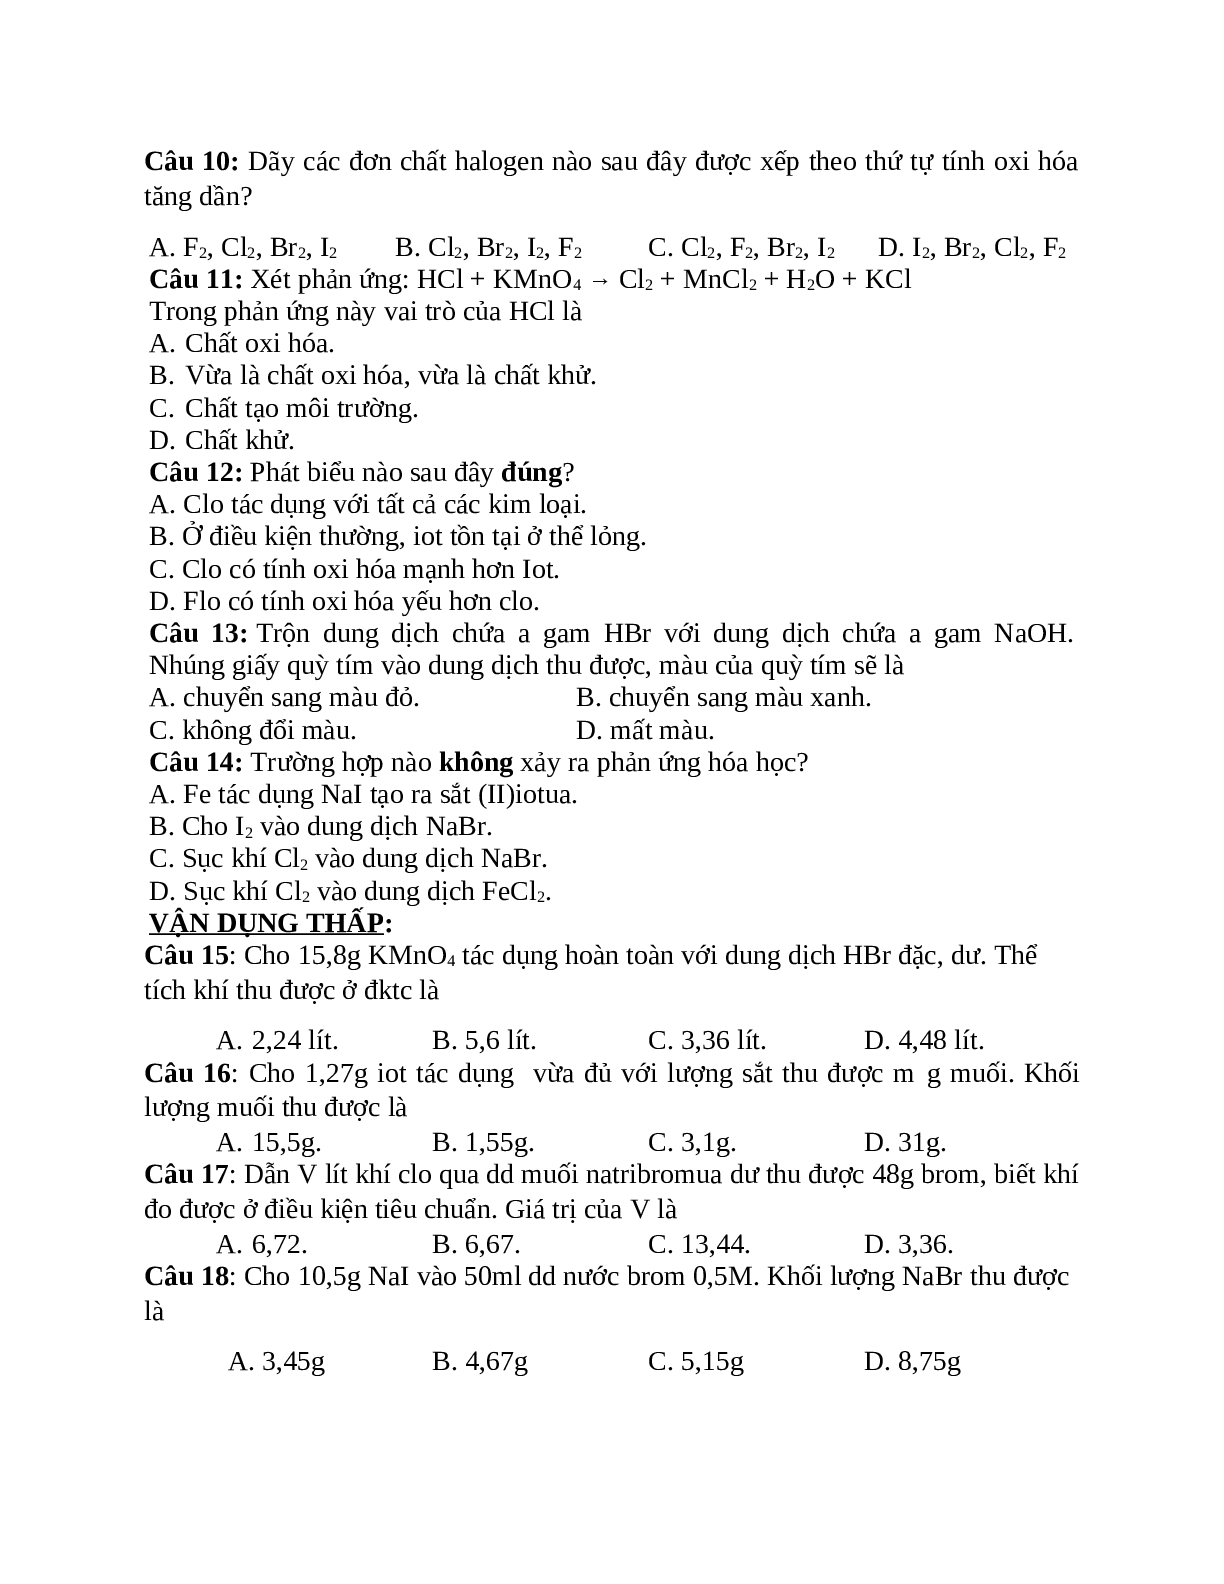 20 câu trắc nghiệm chuyên đề nhóm Halogen (đề 2) (trang 2)